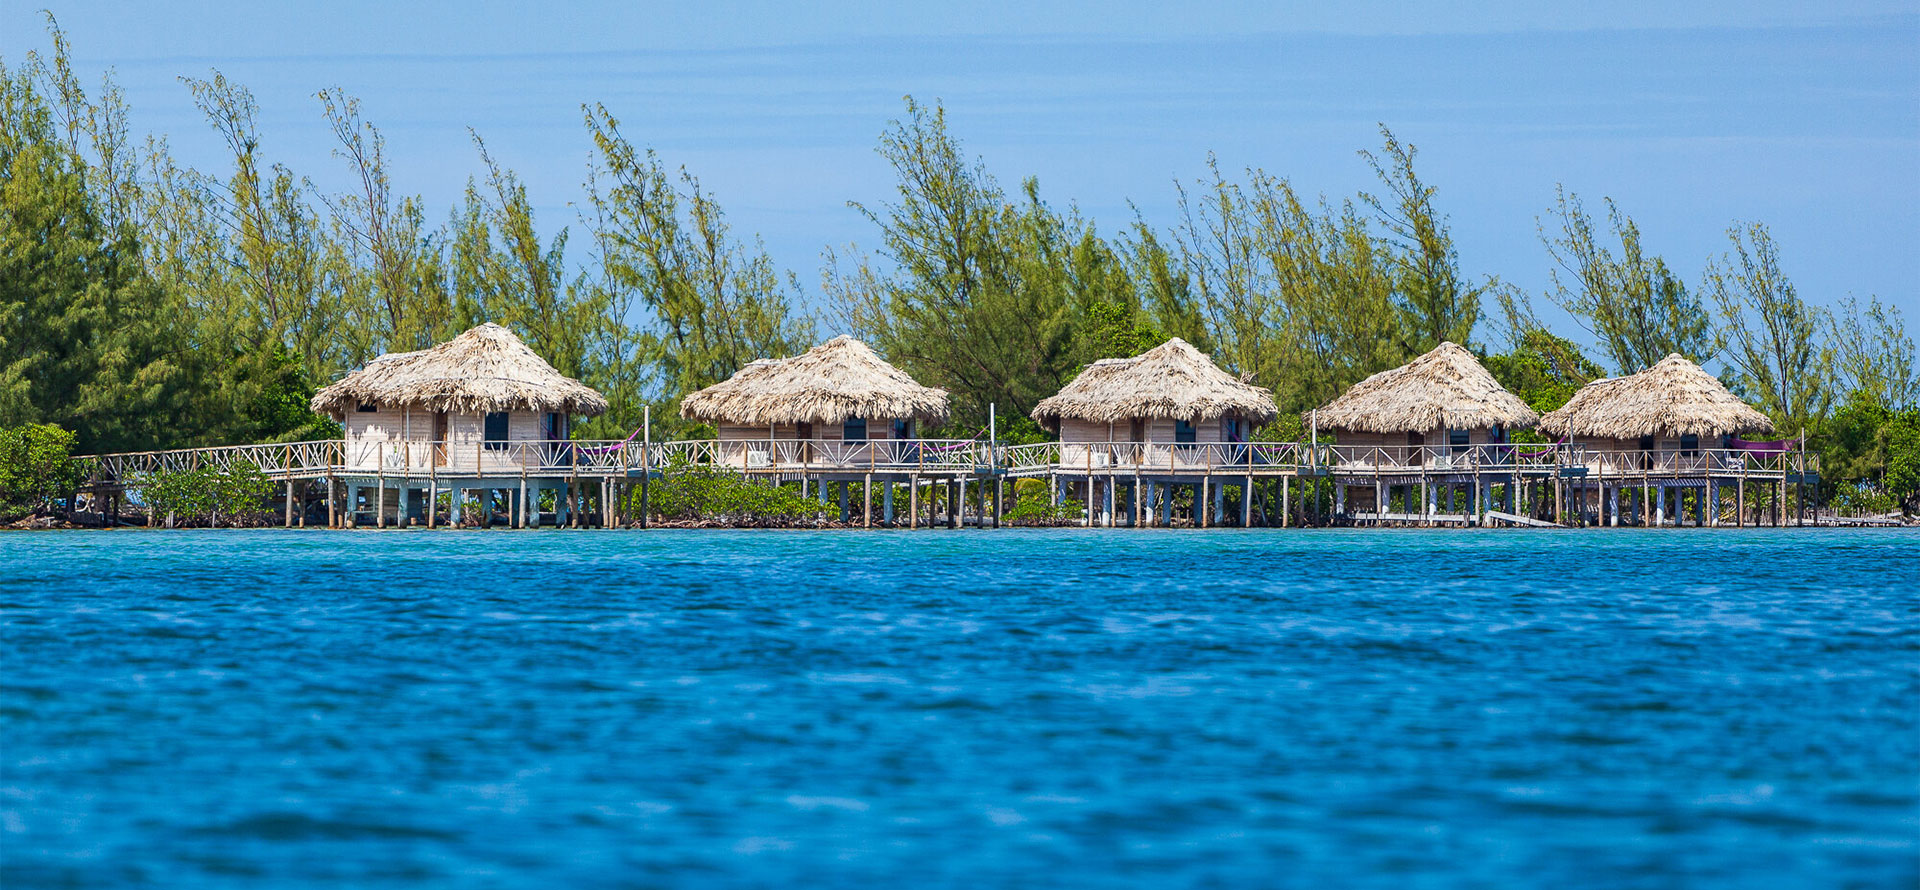 Belize overwater bungalows in ocean.